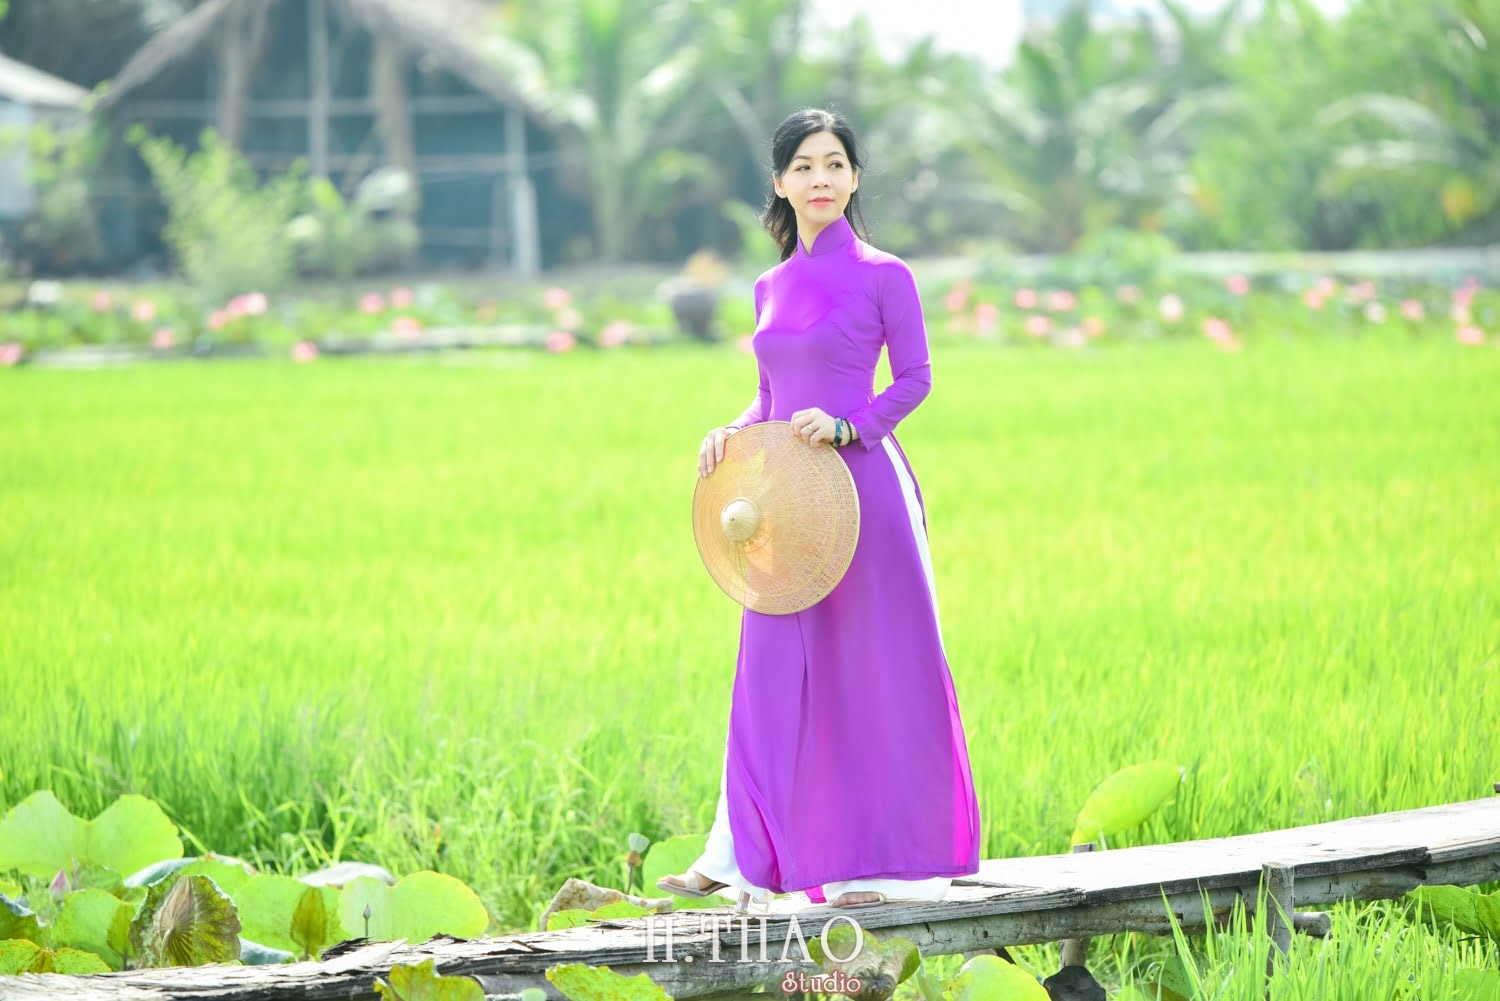 Anh Hoa sen 23 min - 49 cách tạo dáng chụp ảnh với áo dài tuyệt đẹp - HThao Studio